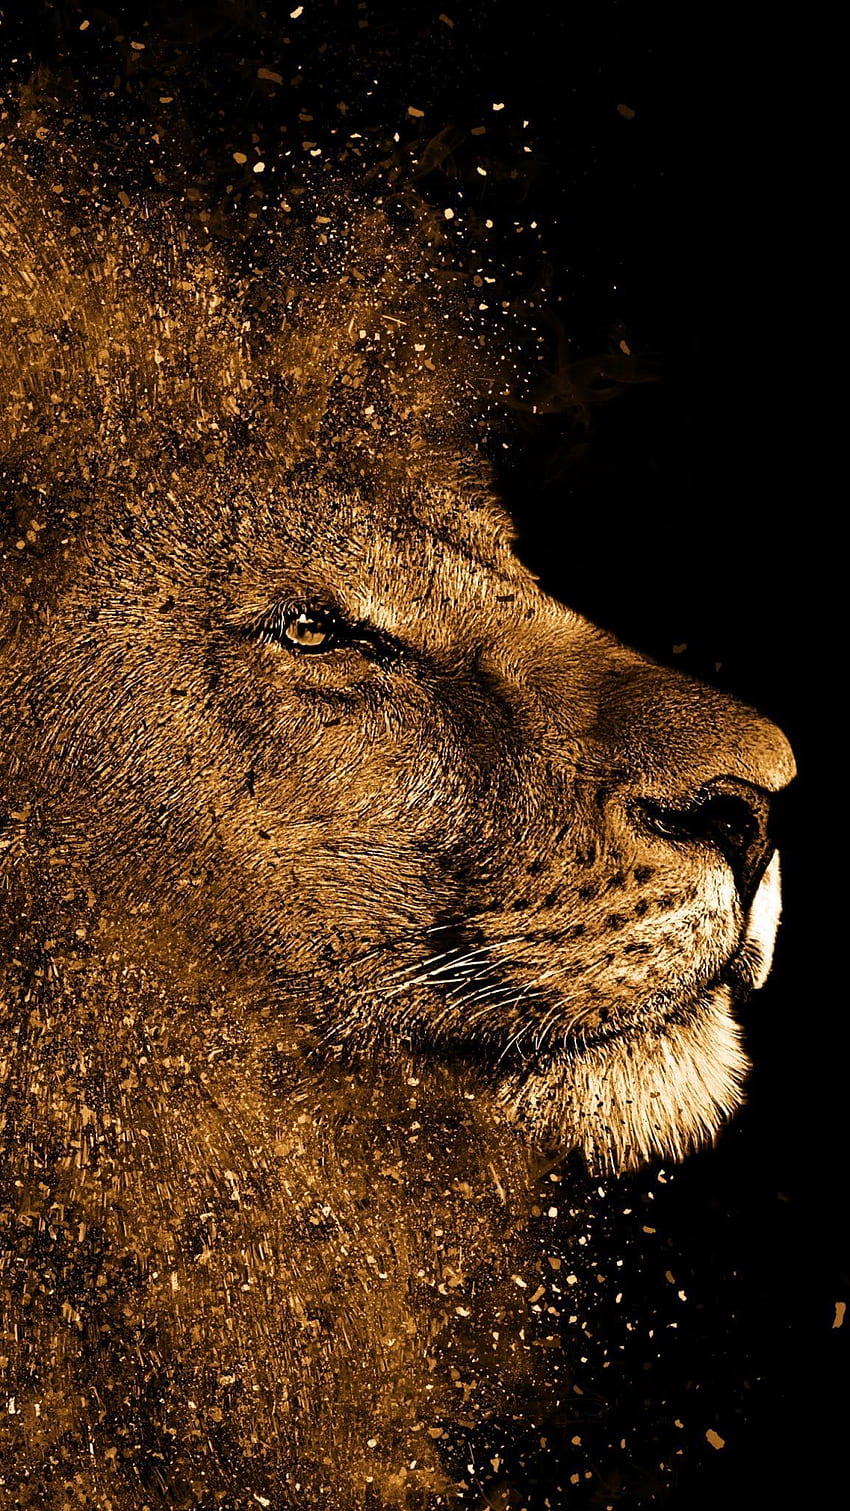 ライオンの絵のアート作品、モバイル、動物、地上。 ライオンの絵, ライオンの絵, ライオンアート, 芸術的なライオン HD電話の壁紙